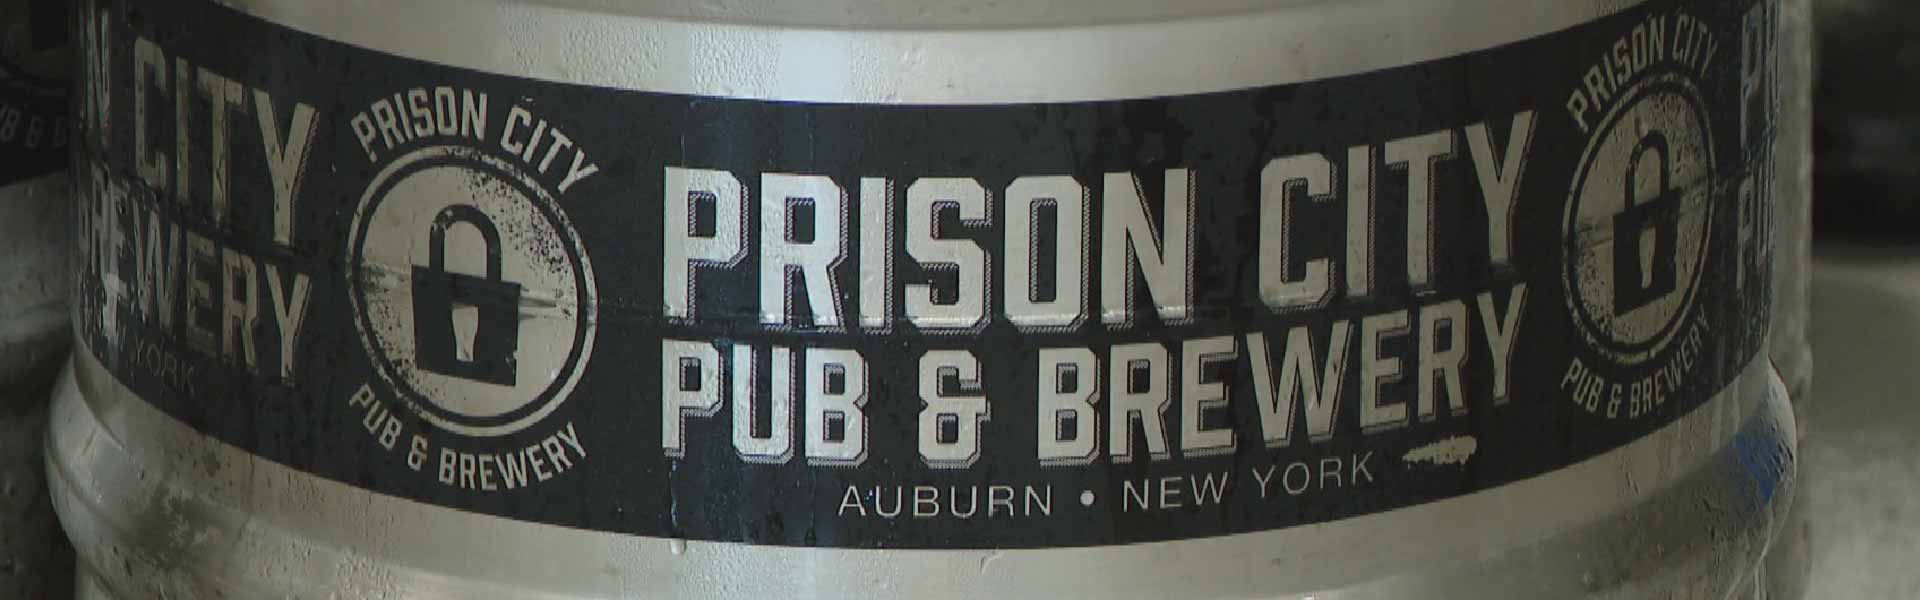 Prison City Brewing Company